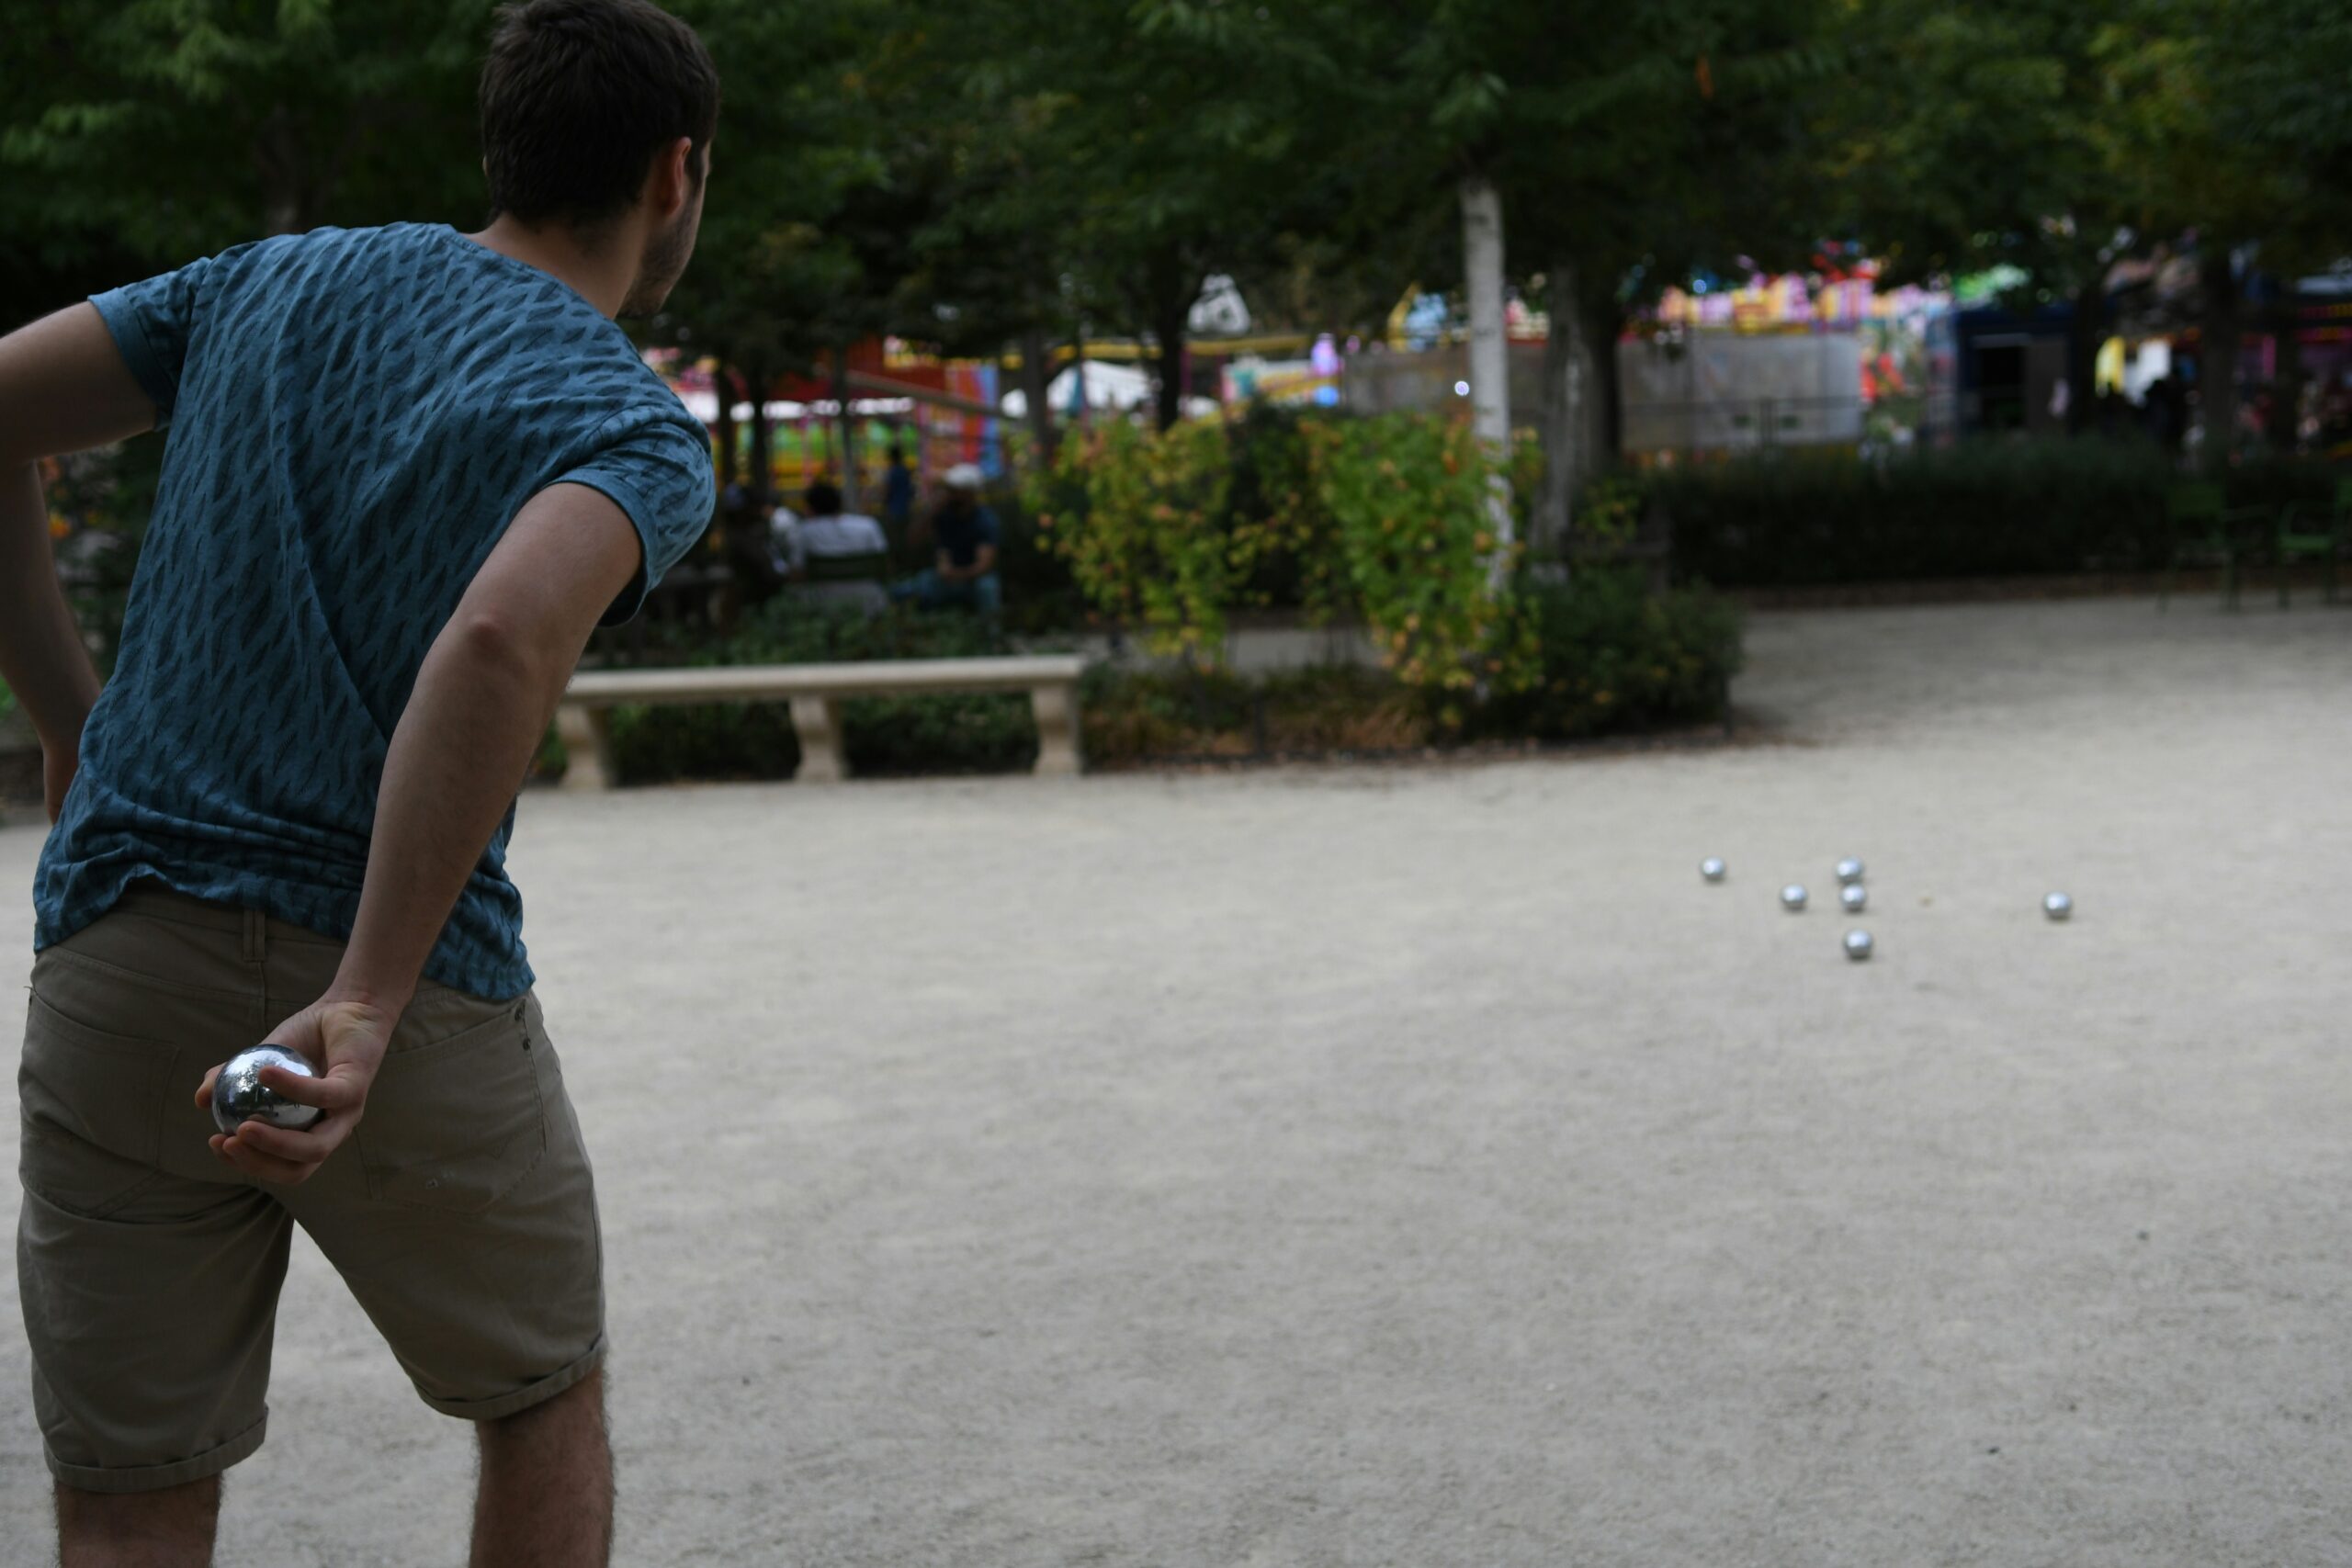 découvrez l'histoire, les règles et les astuces de jeu de la pétanque, un sport de boules emblématique de la culture française.